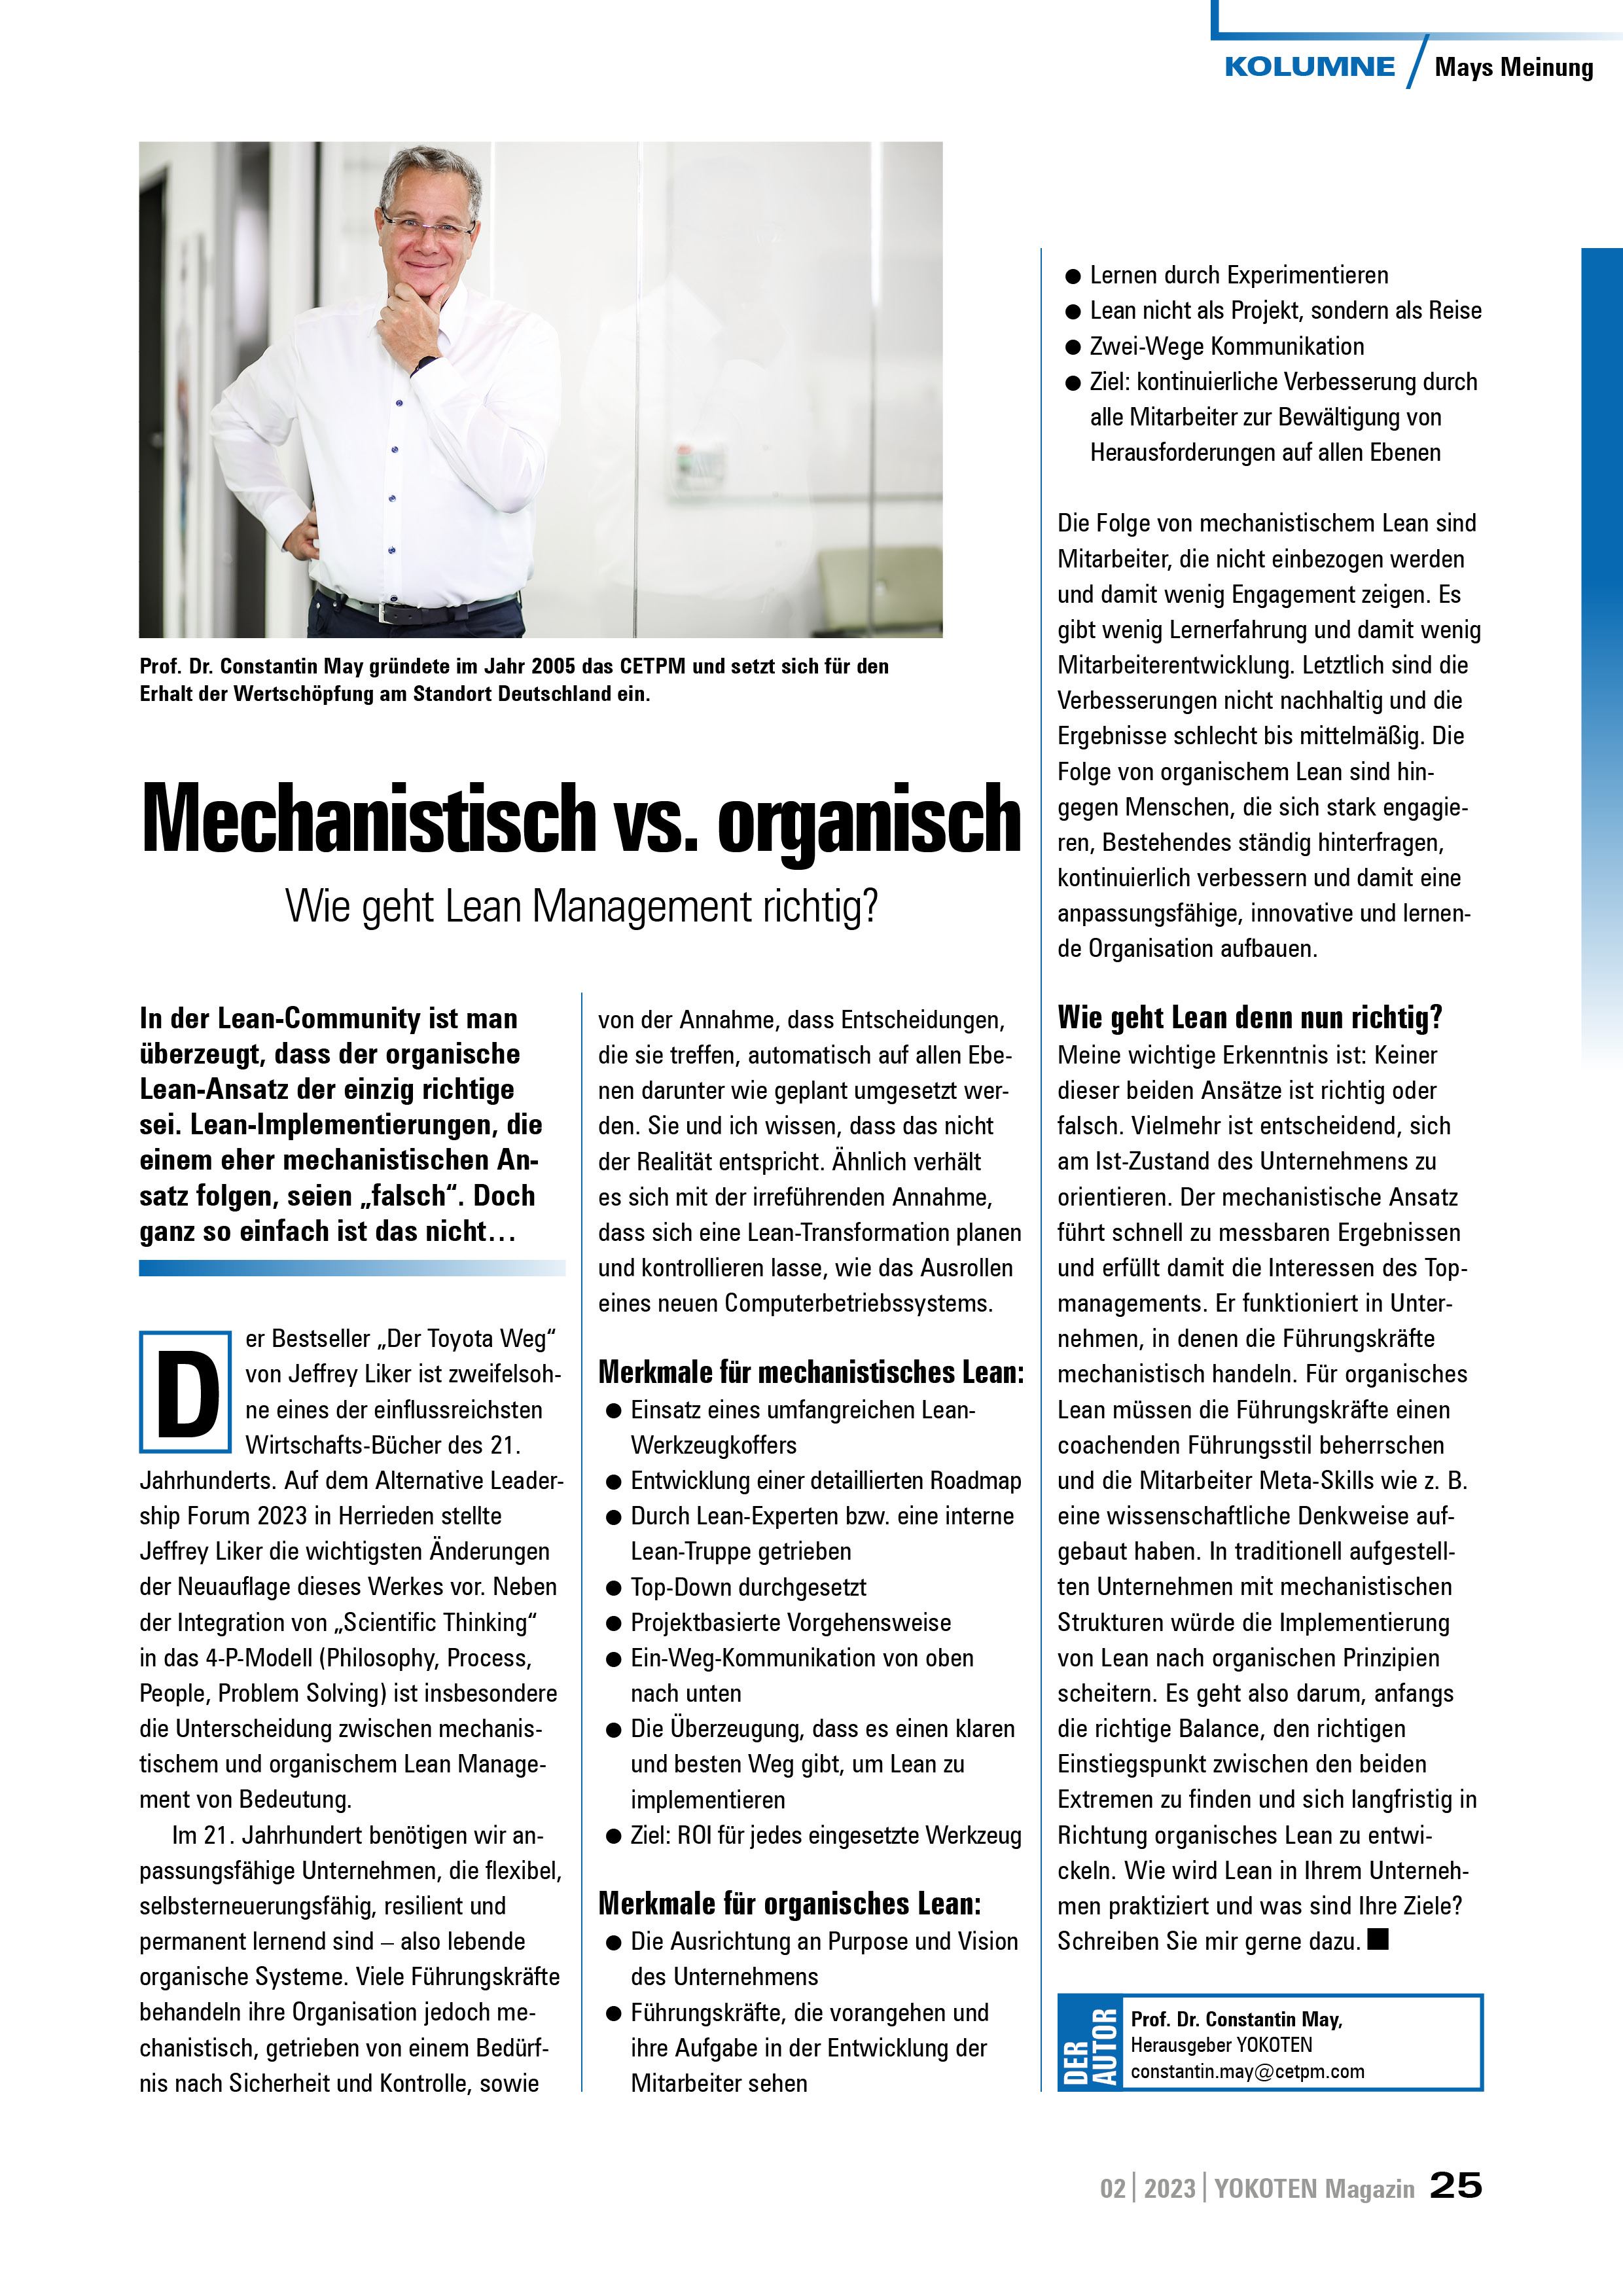 Mechanistisch vs. organisch - Artikel aus Fachmagazin YOKOTEN 2023-02